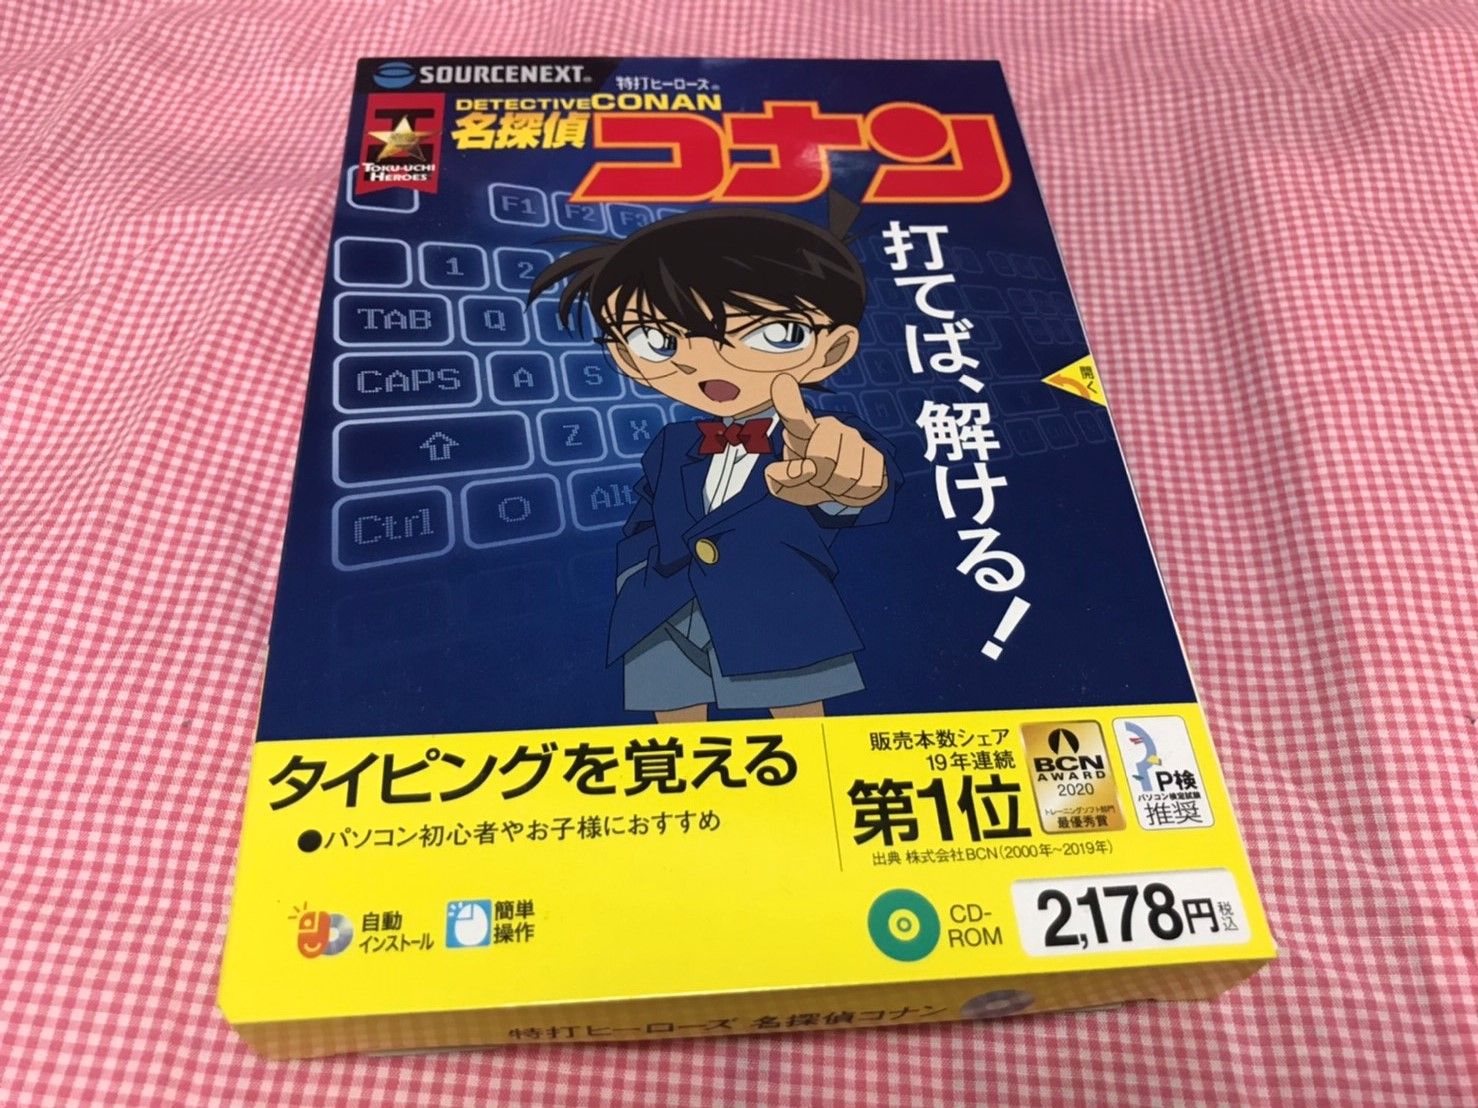 数量限定!特売 CD―ROM 名探偵コナン 特打ヒーローズ ソースネクスト